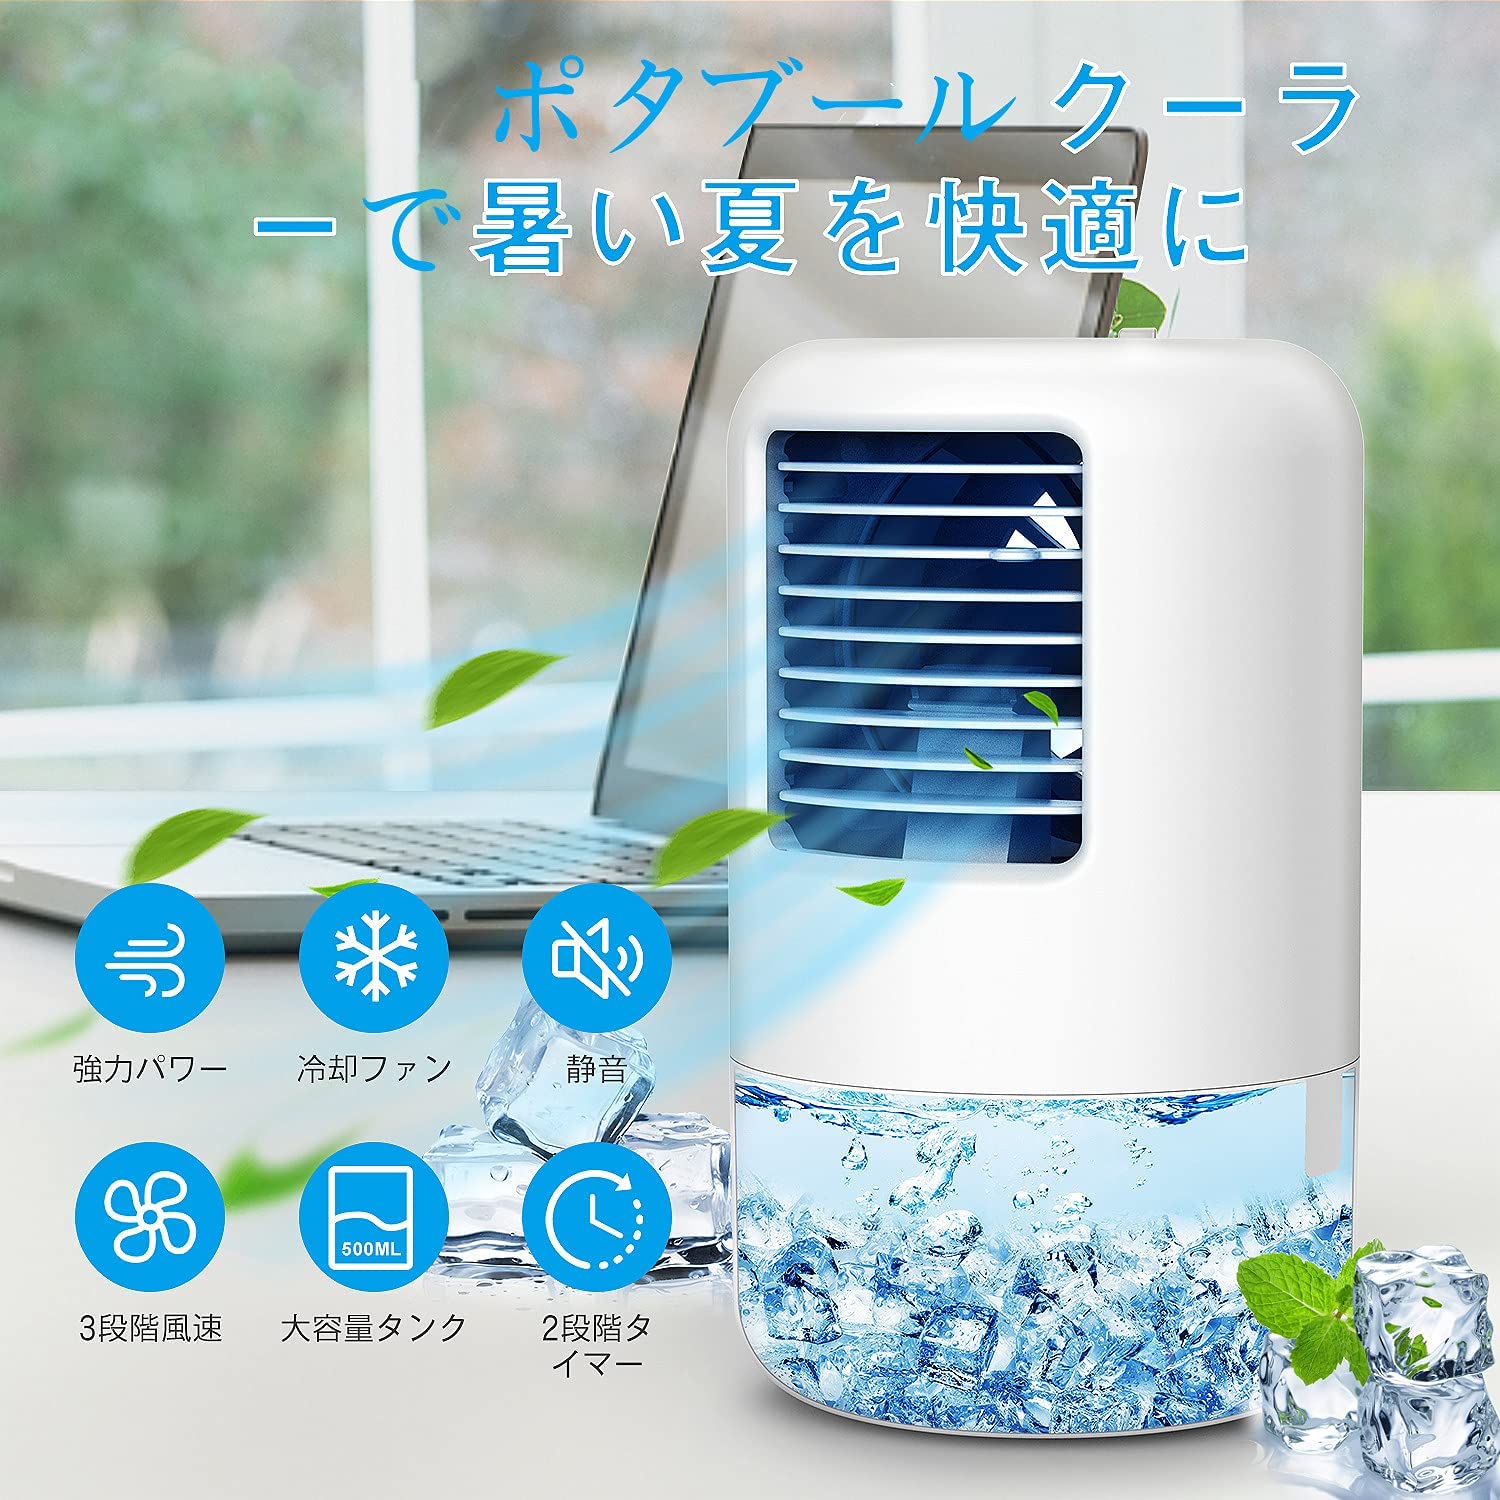 都内で 猛暑 熱中症対策 新品送料無料 冷風扇 卓上 冷風機 ミニエアコンUSB給電式